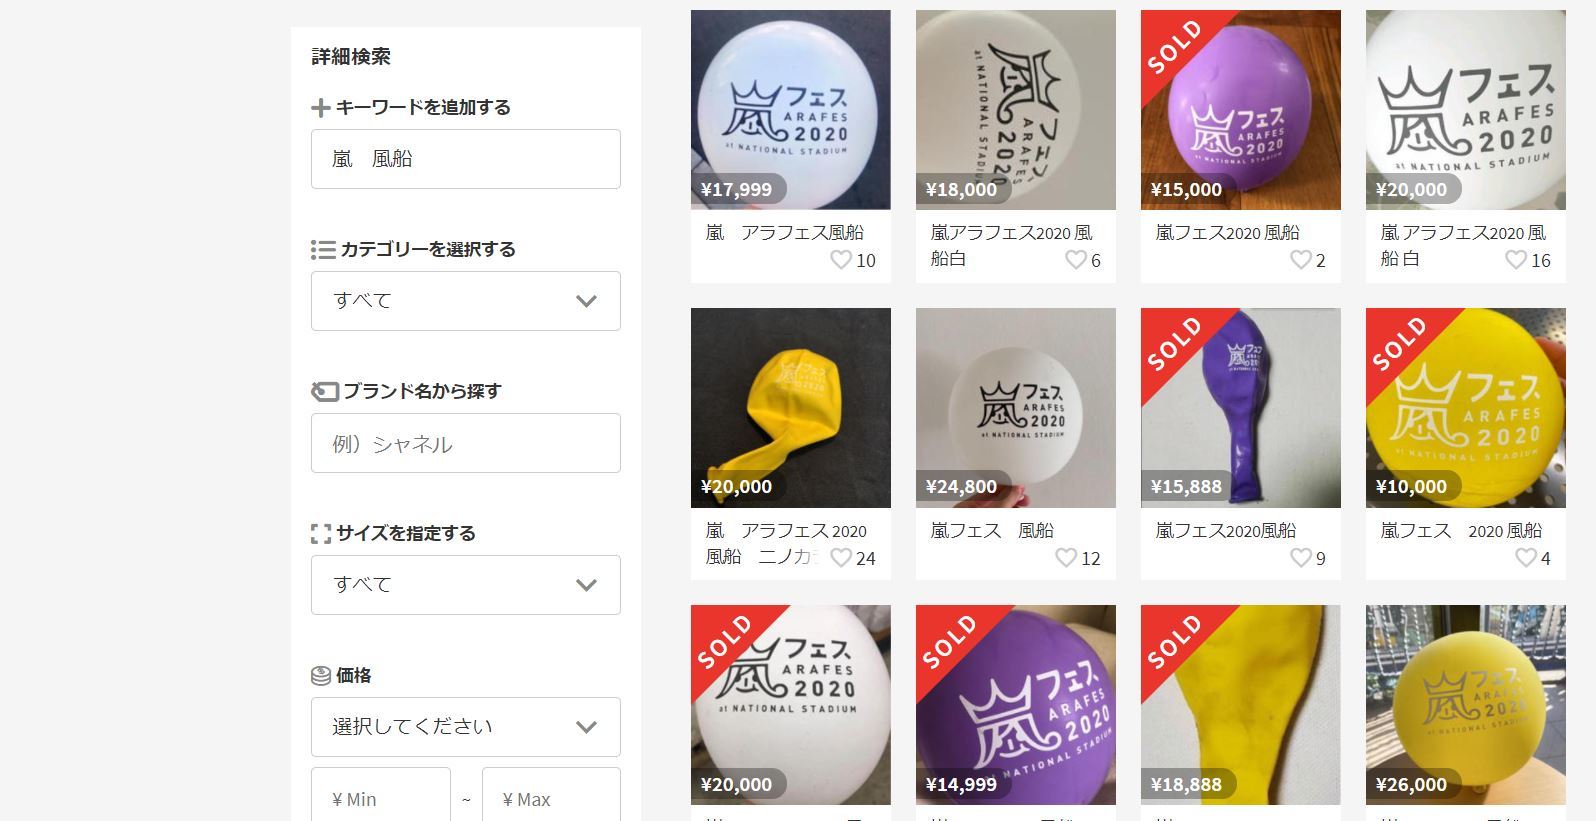 嵐ライブの風船 メルカリで高額取引 5色セットで4万円超も ネット上で驚きの声 Itmedia News